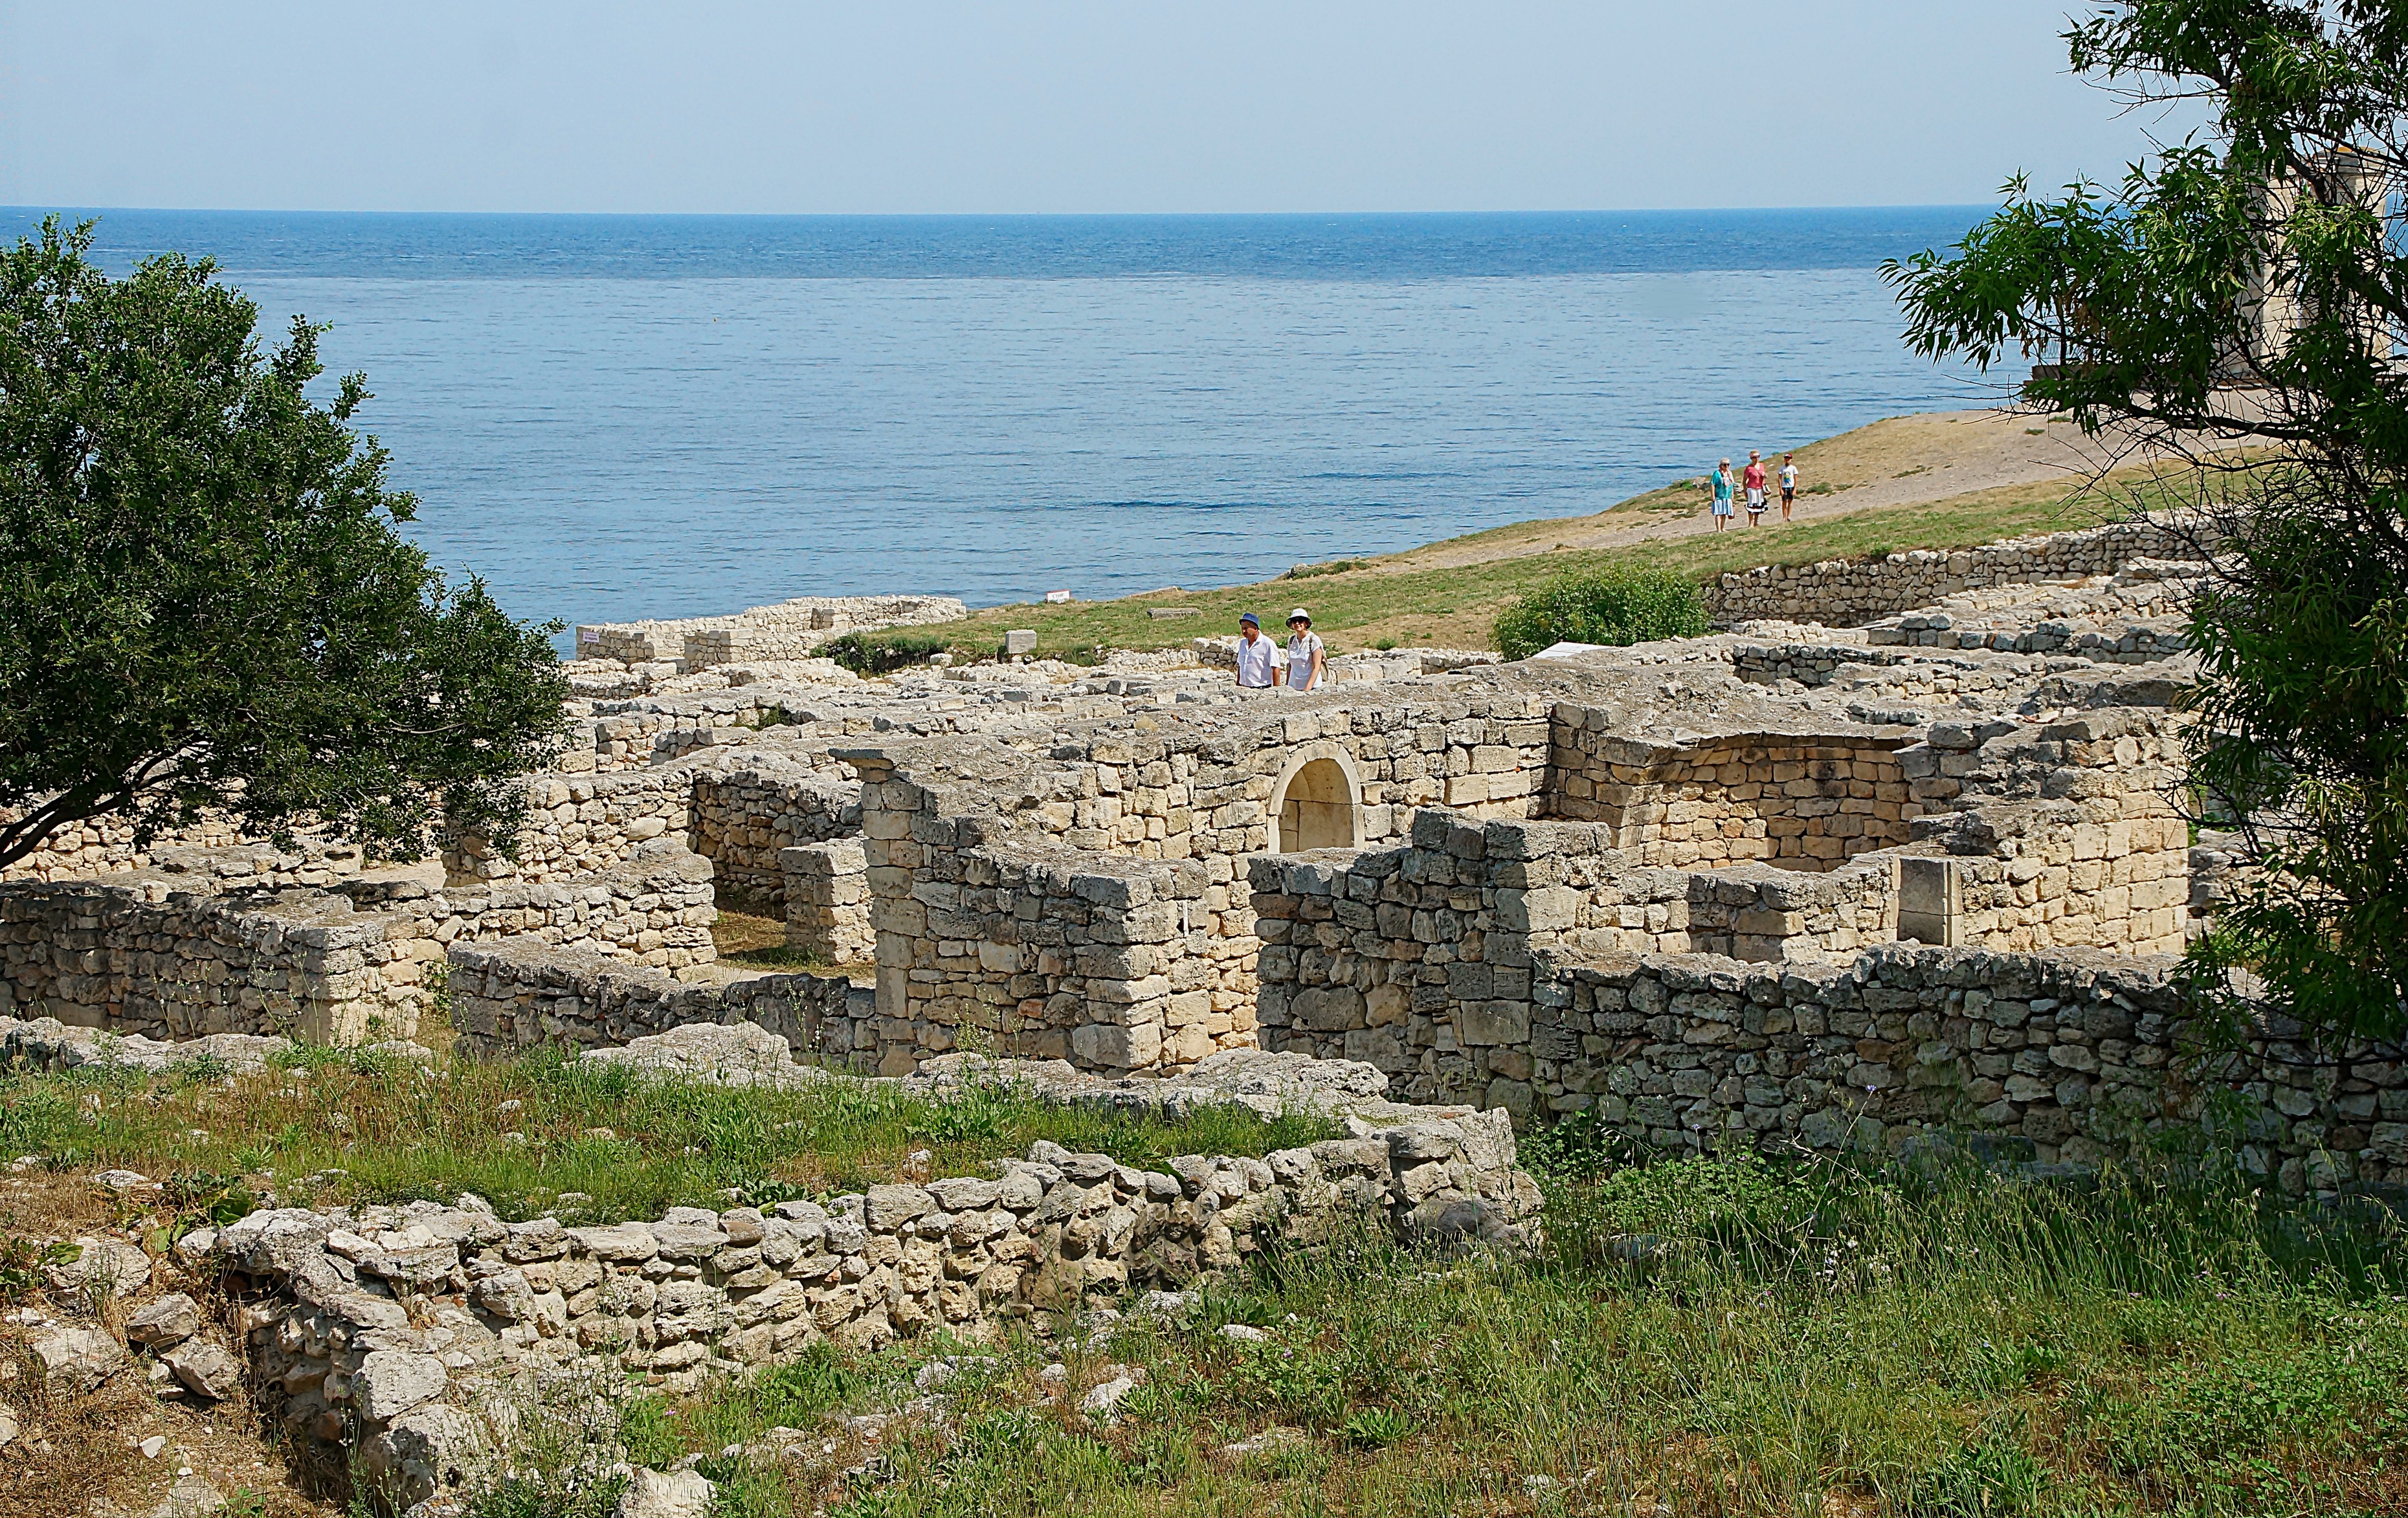 Развалины античного города Херсонеса Таврического возле Севастополя. Фото Морошкина В.В.